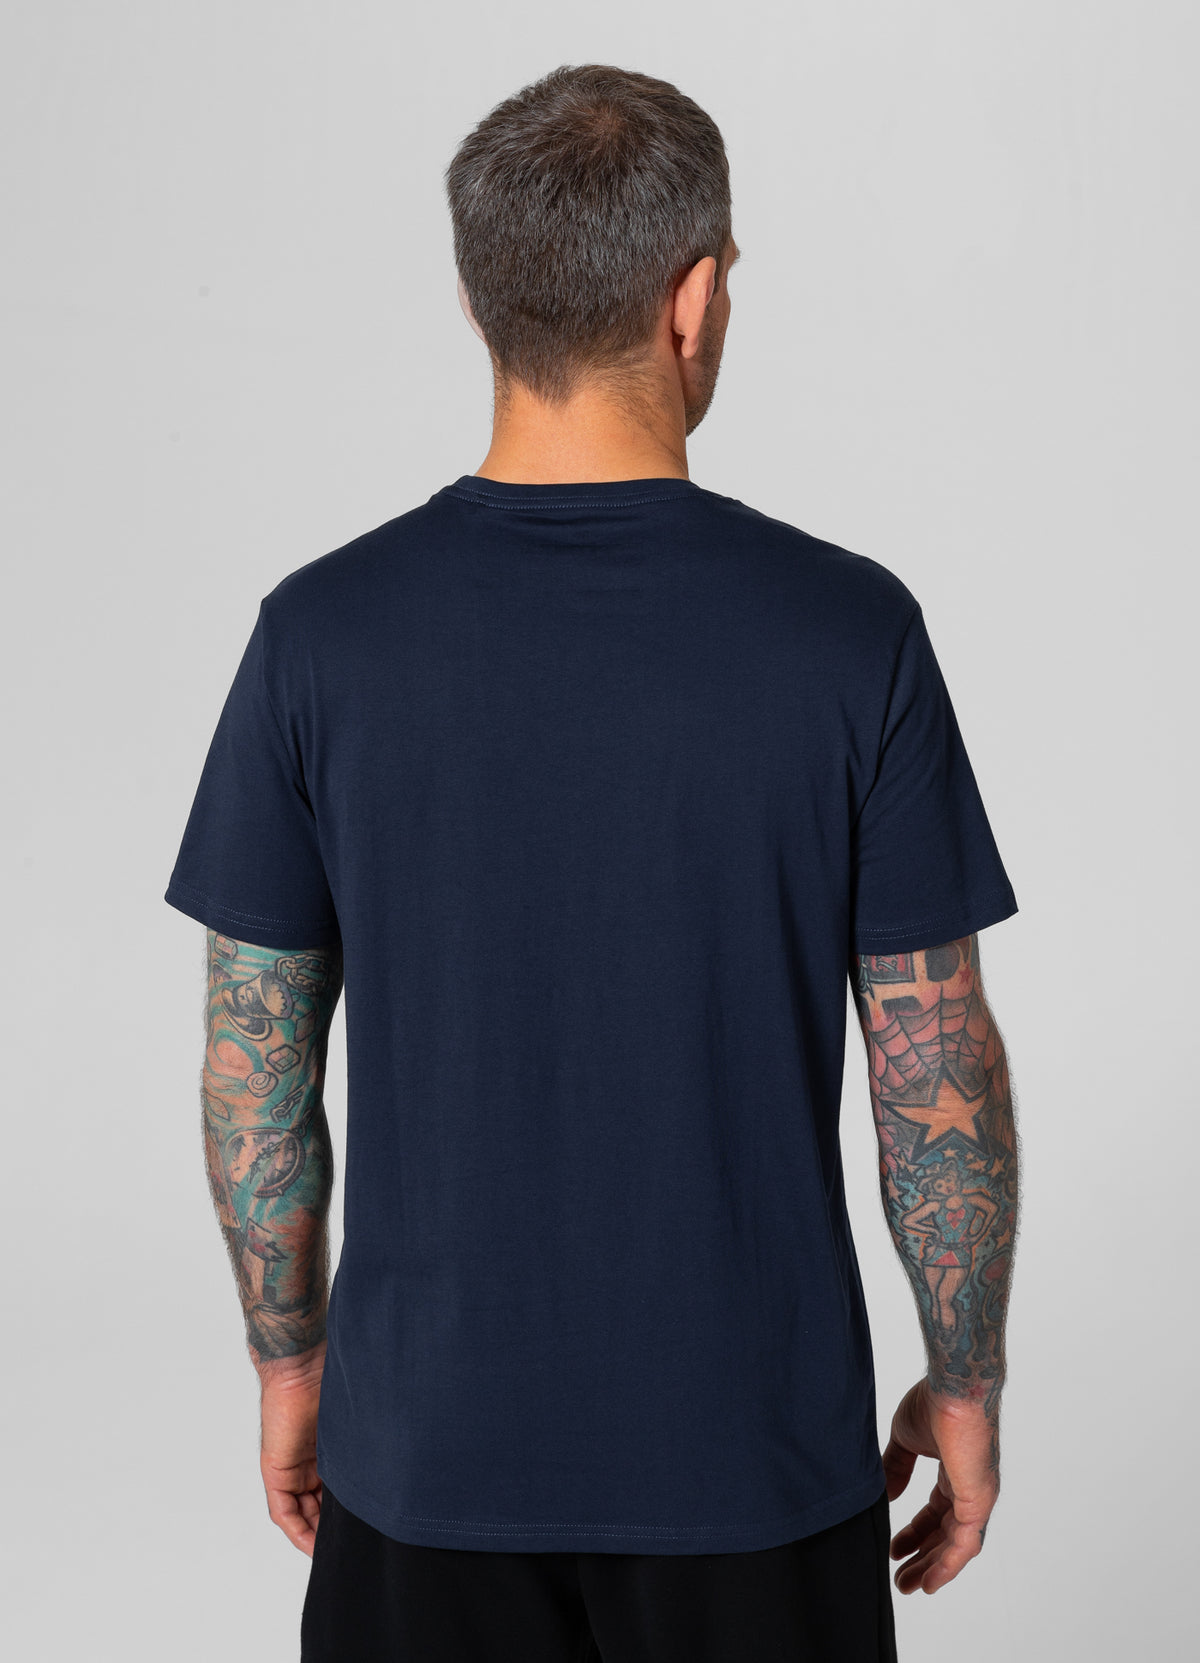 SMALL LOGO Lightweight Dark Navy T-shirt - Pitbullstore.eu